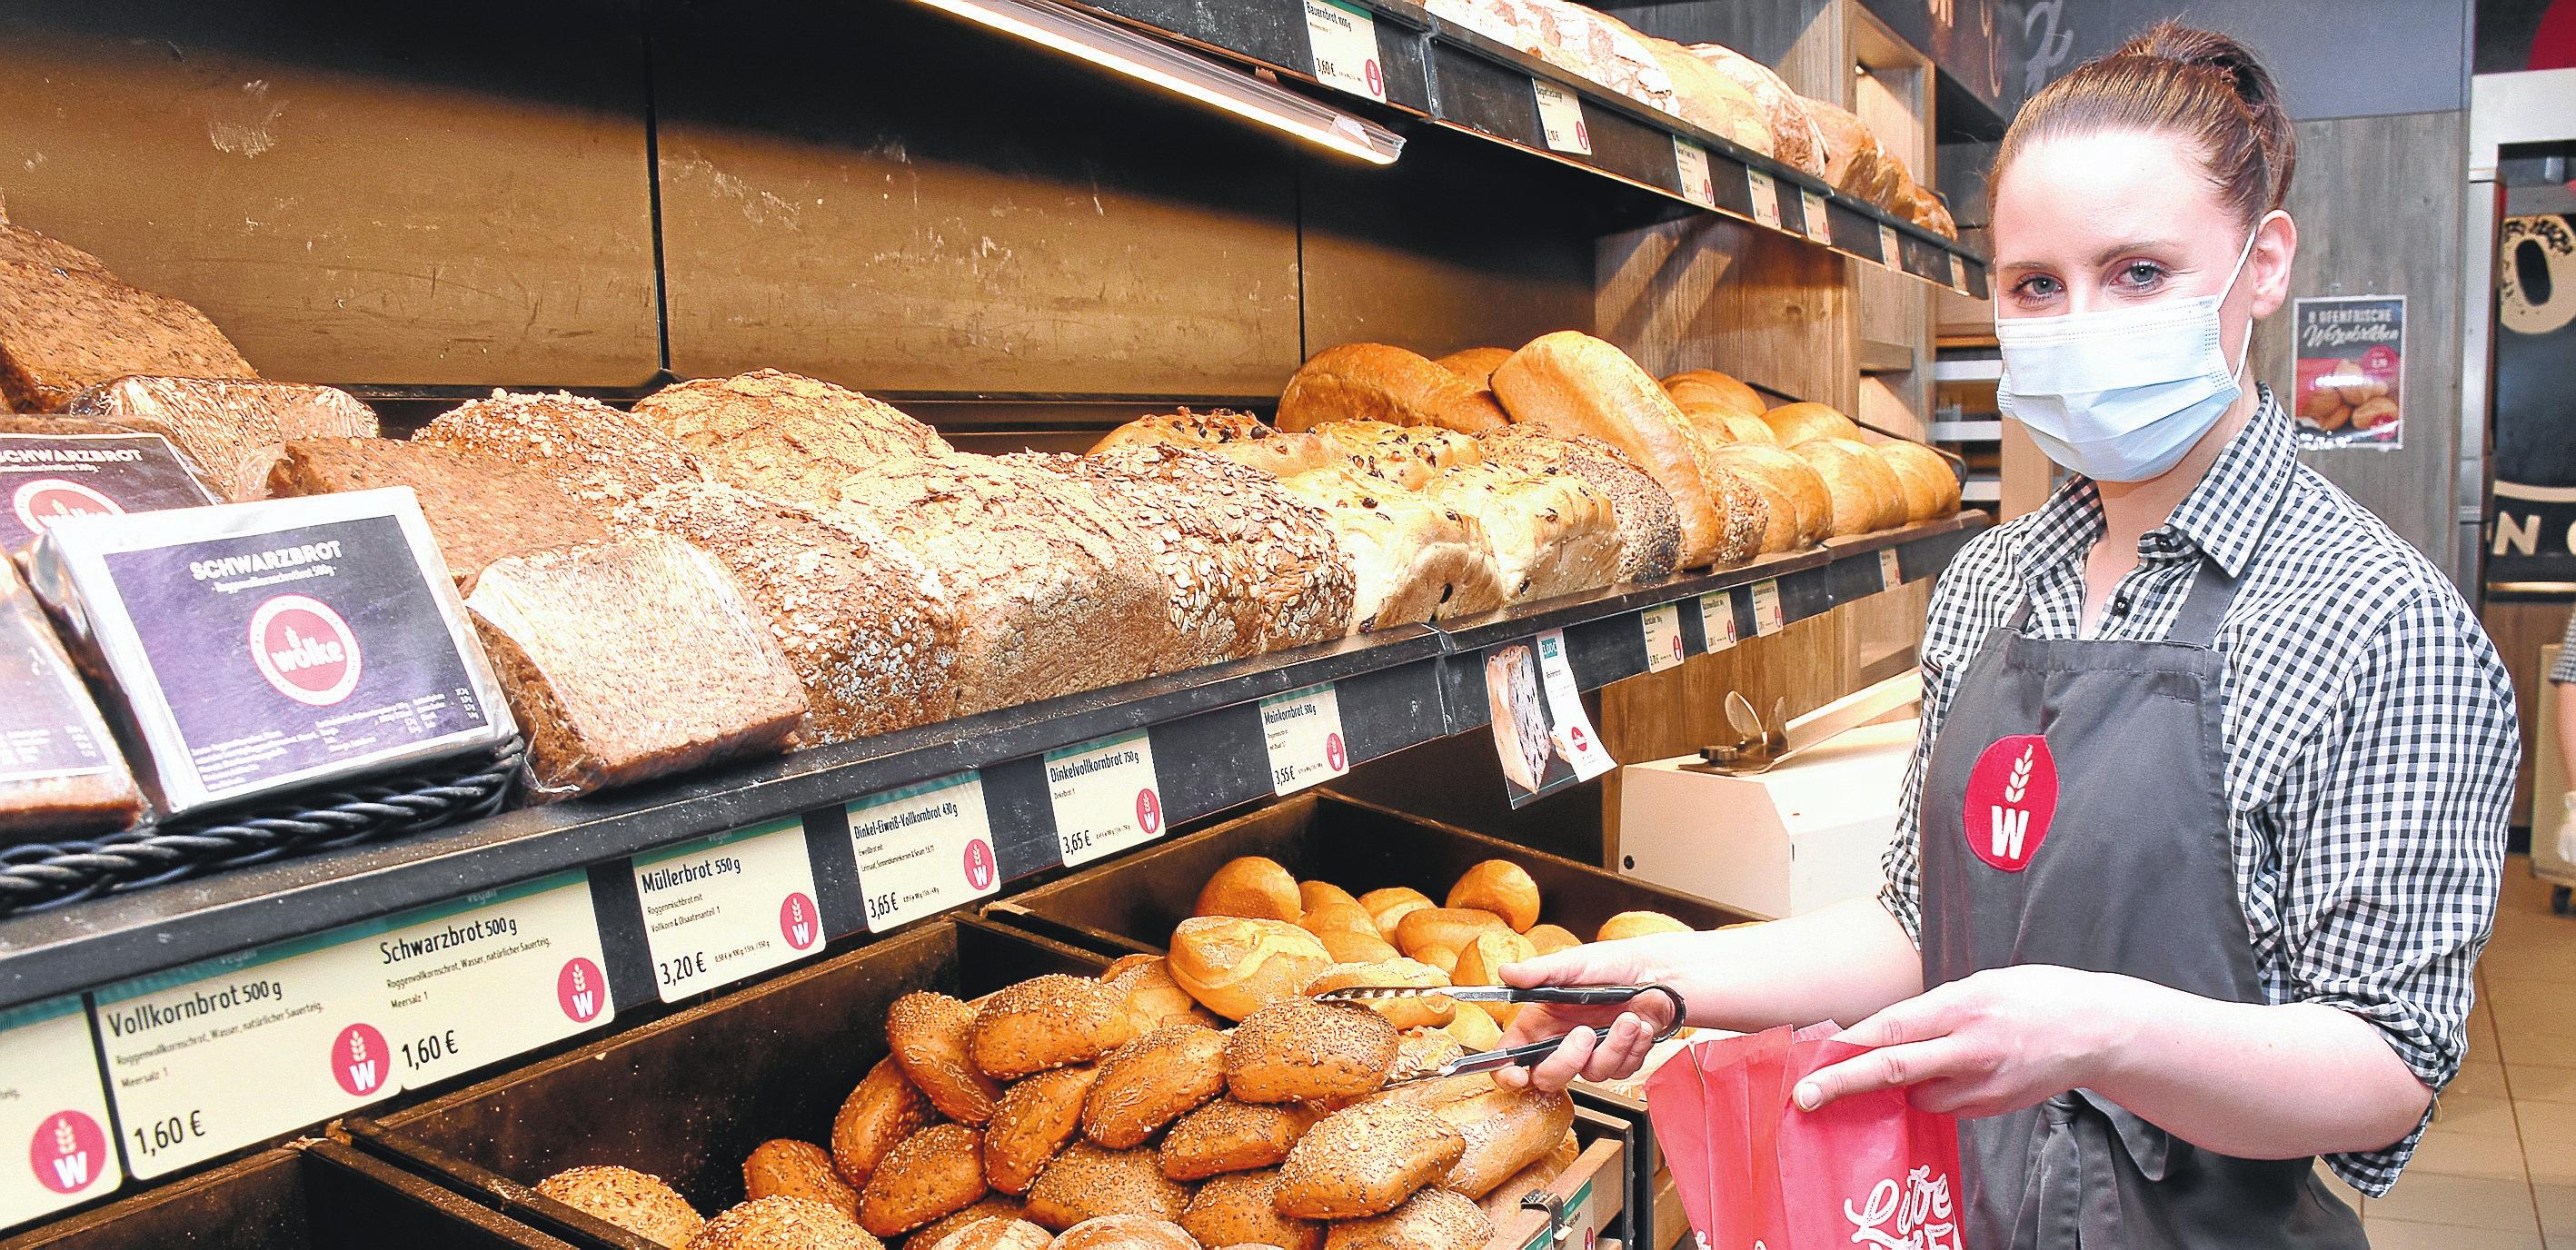 Große Auswahl: Vom knackigen Bröchten über leckeren Brot bis zu feinem Gebäck gibt es bei der Bäckerei Wolke viele Köstlichkeiten.